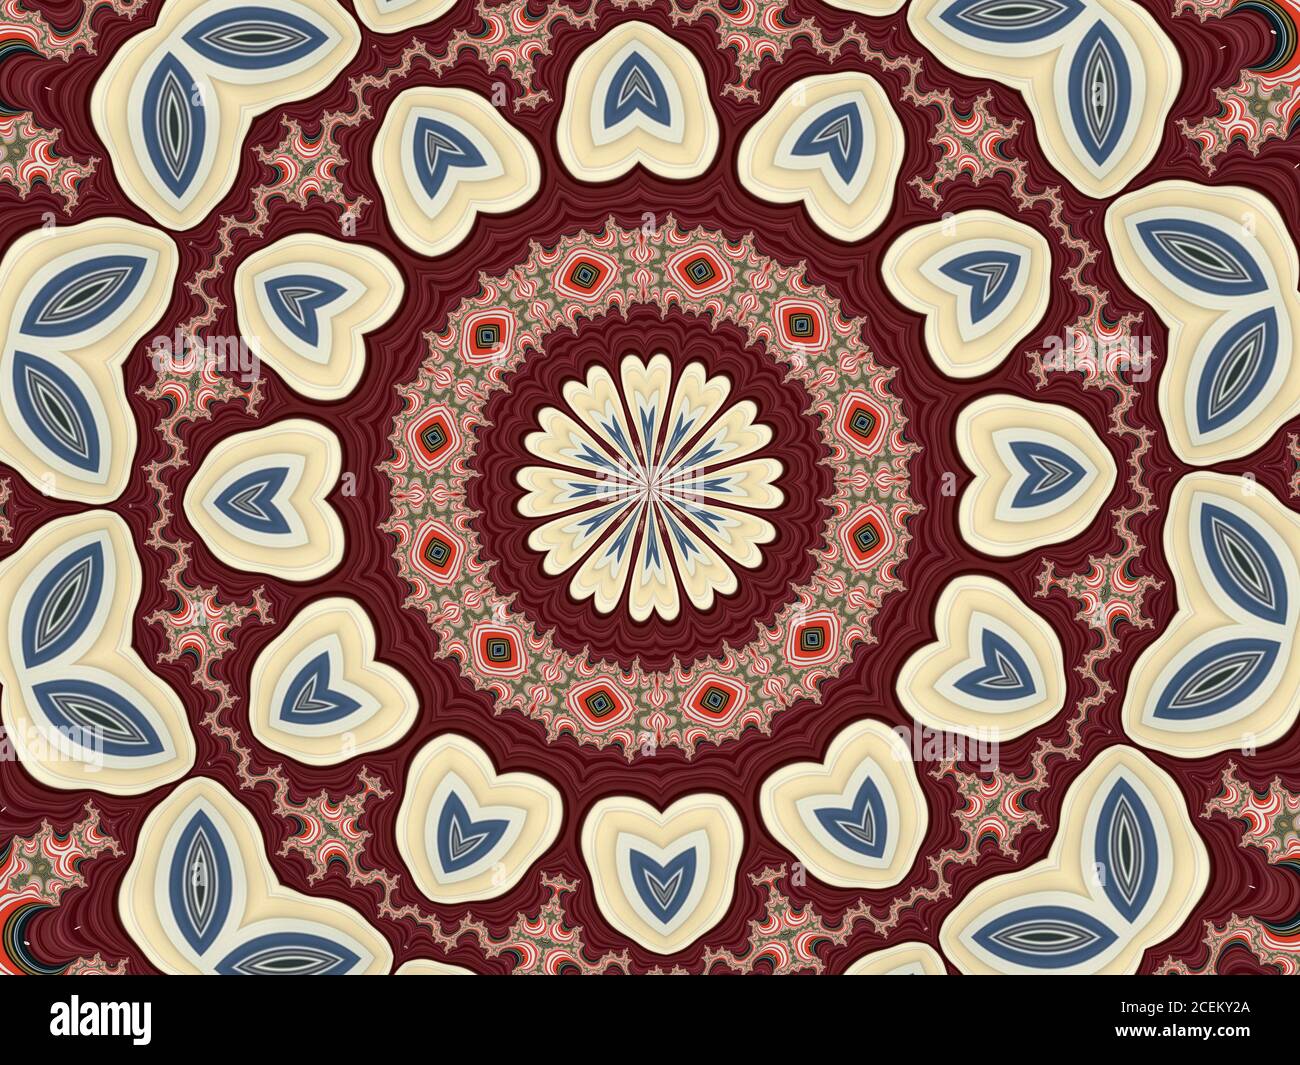 Ilustración caleidoscópica en marrón con formas y patrones interesantes Foto de stock